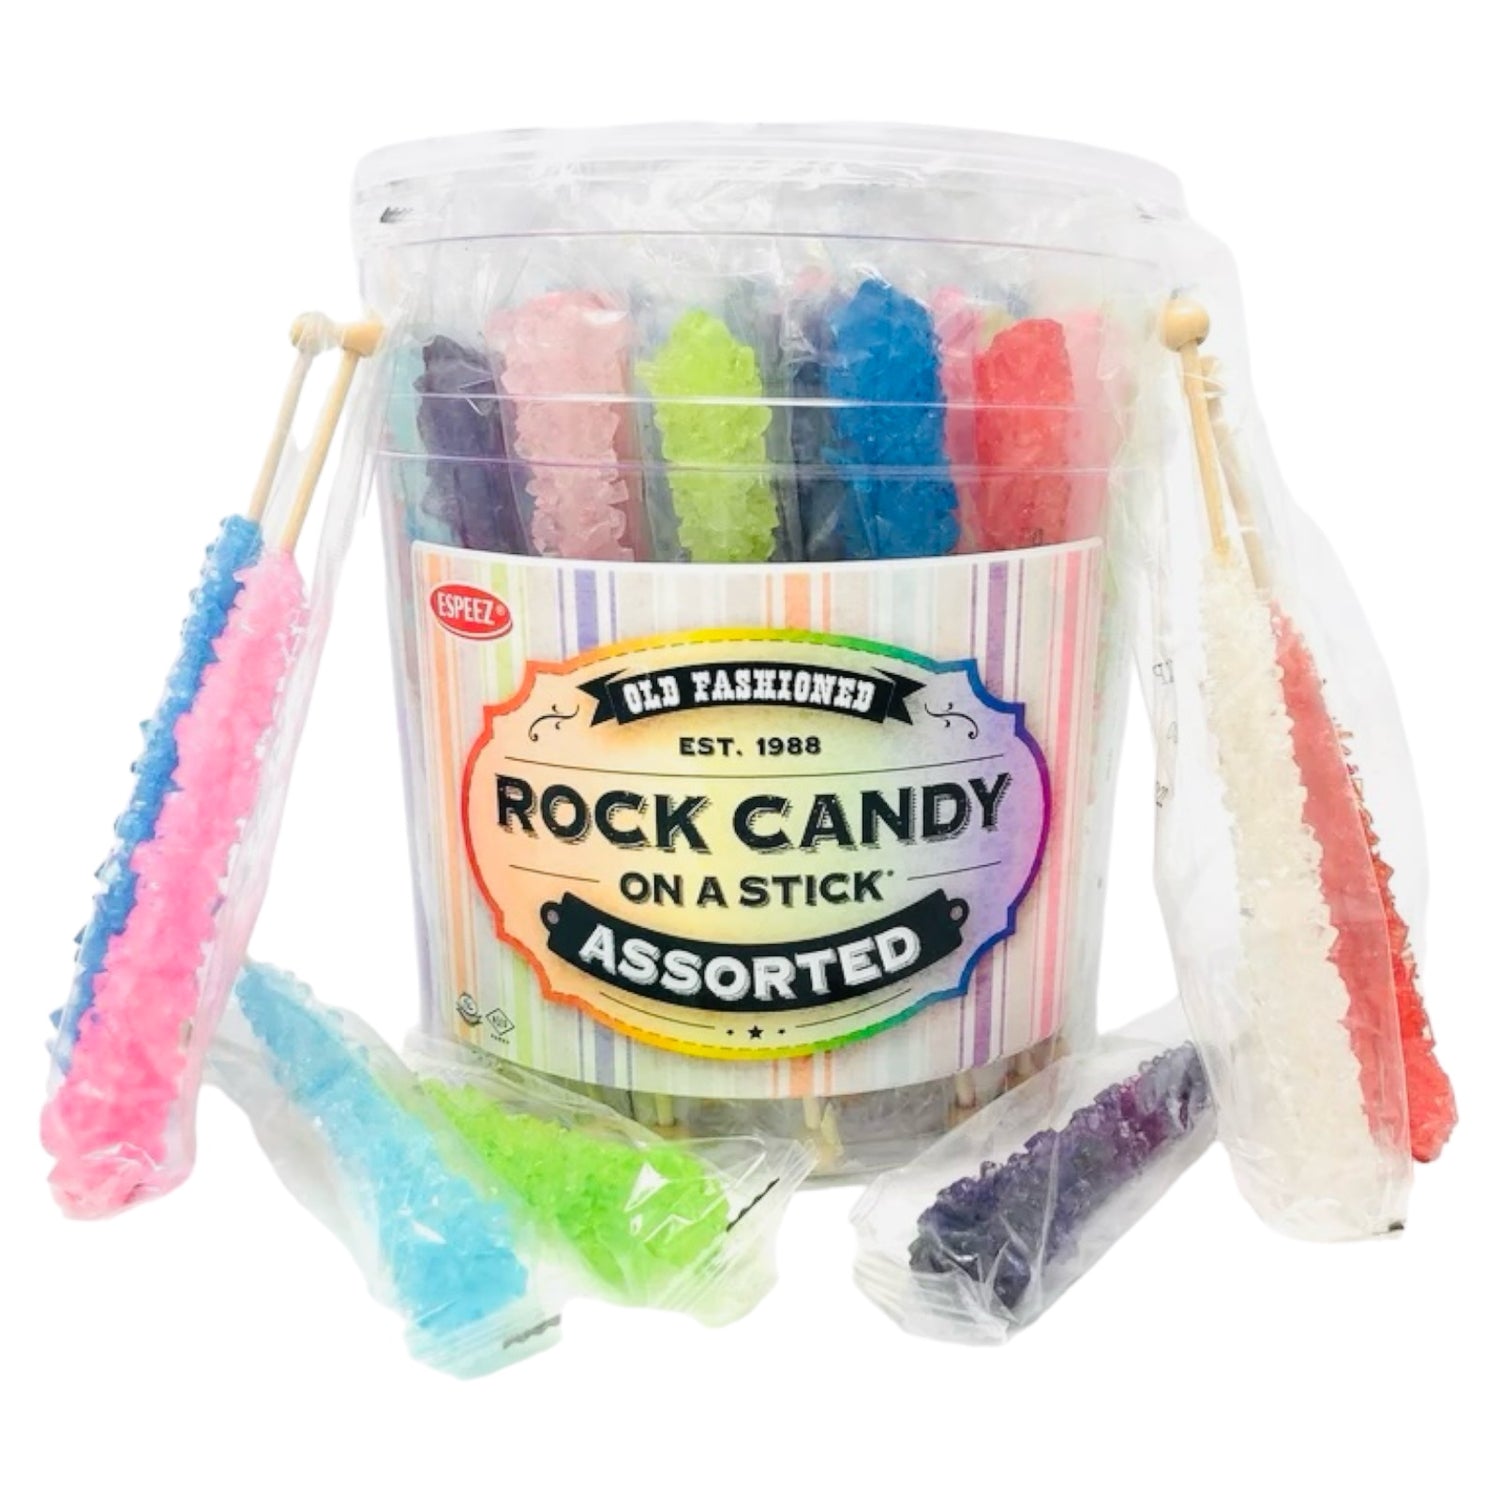 Espeez Rock Sugar Crystals Candy Sticks